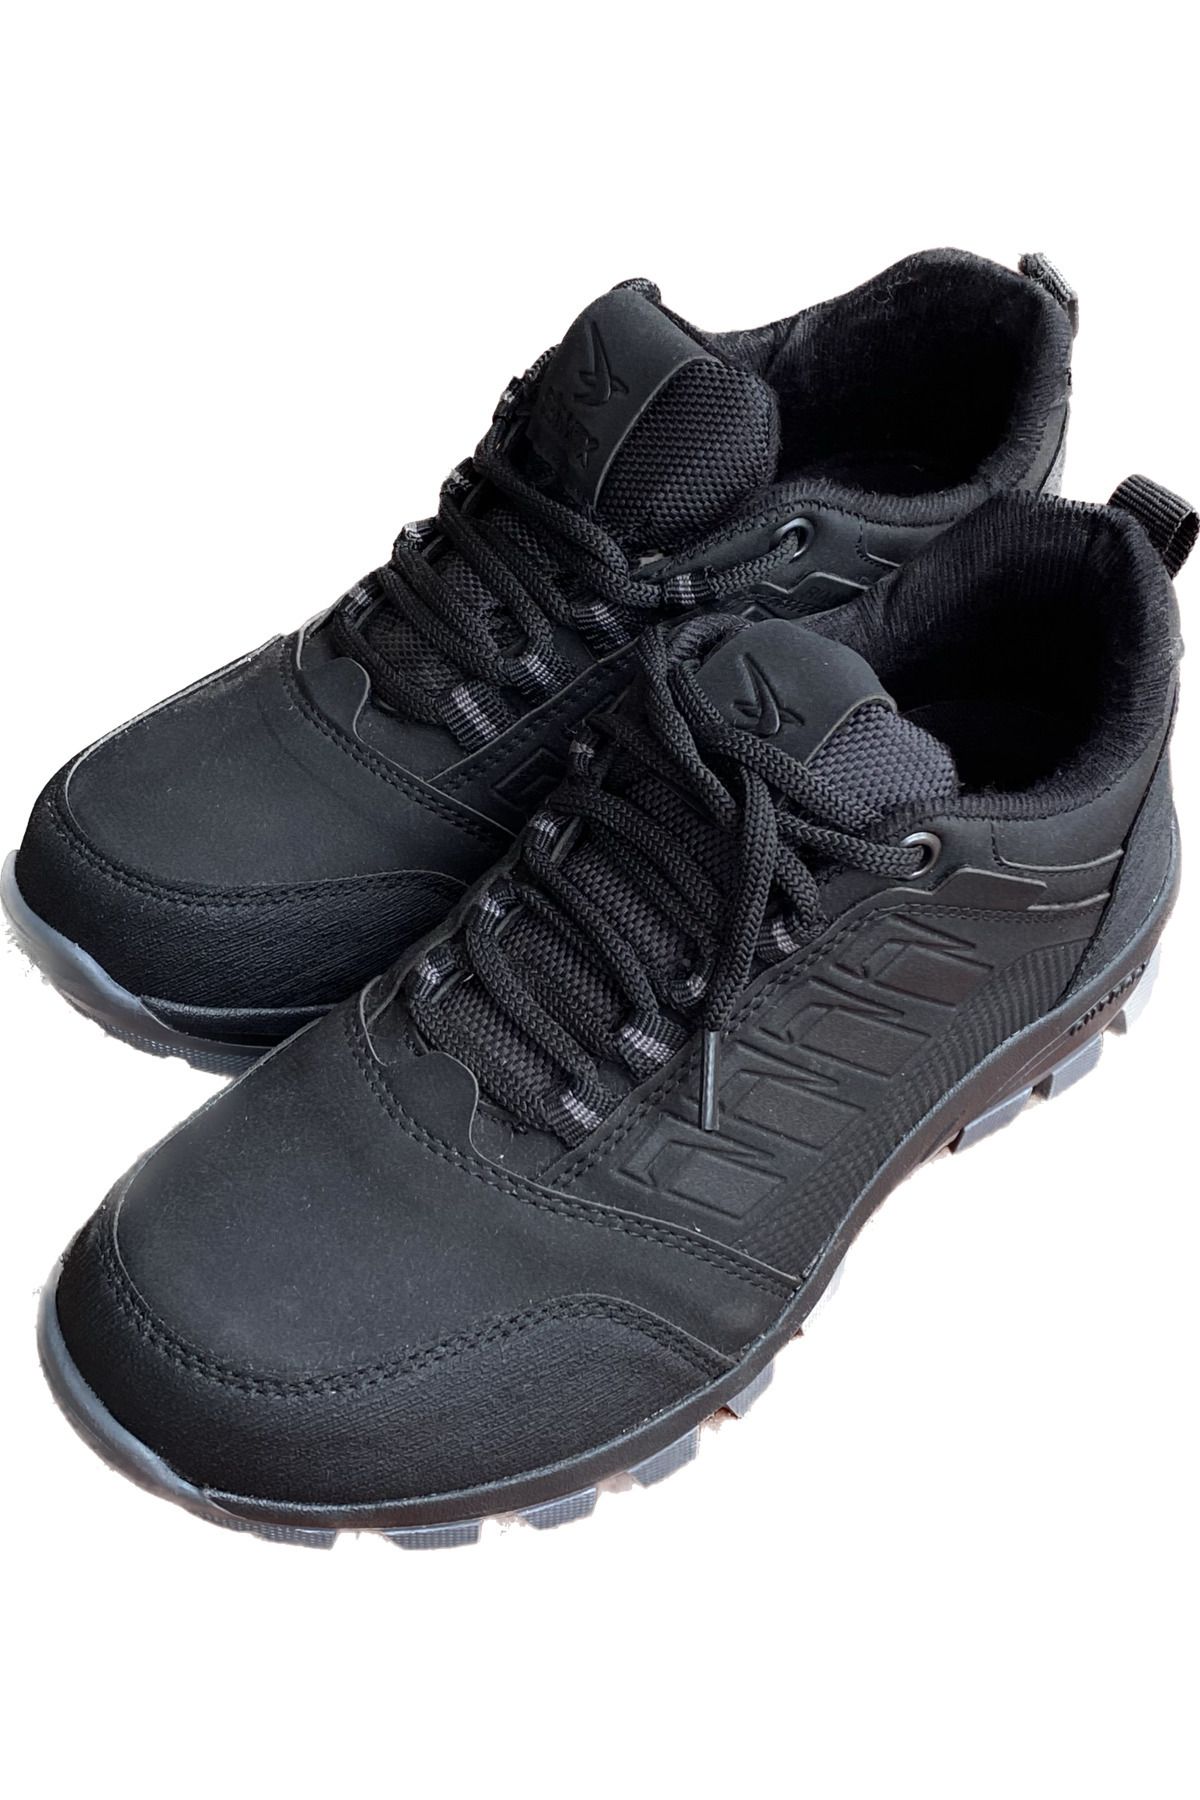 İpek erkek siyah kaydırmaz taban outdoor ayakkabı